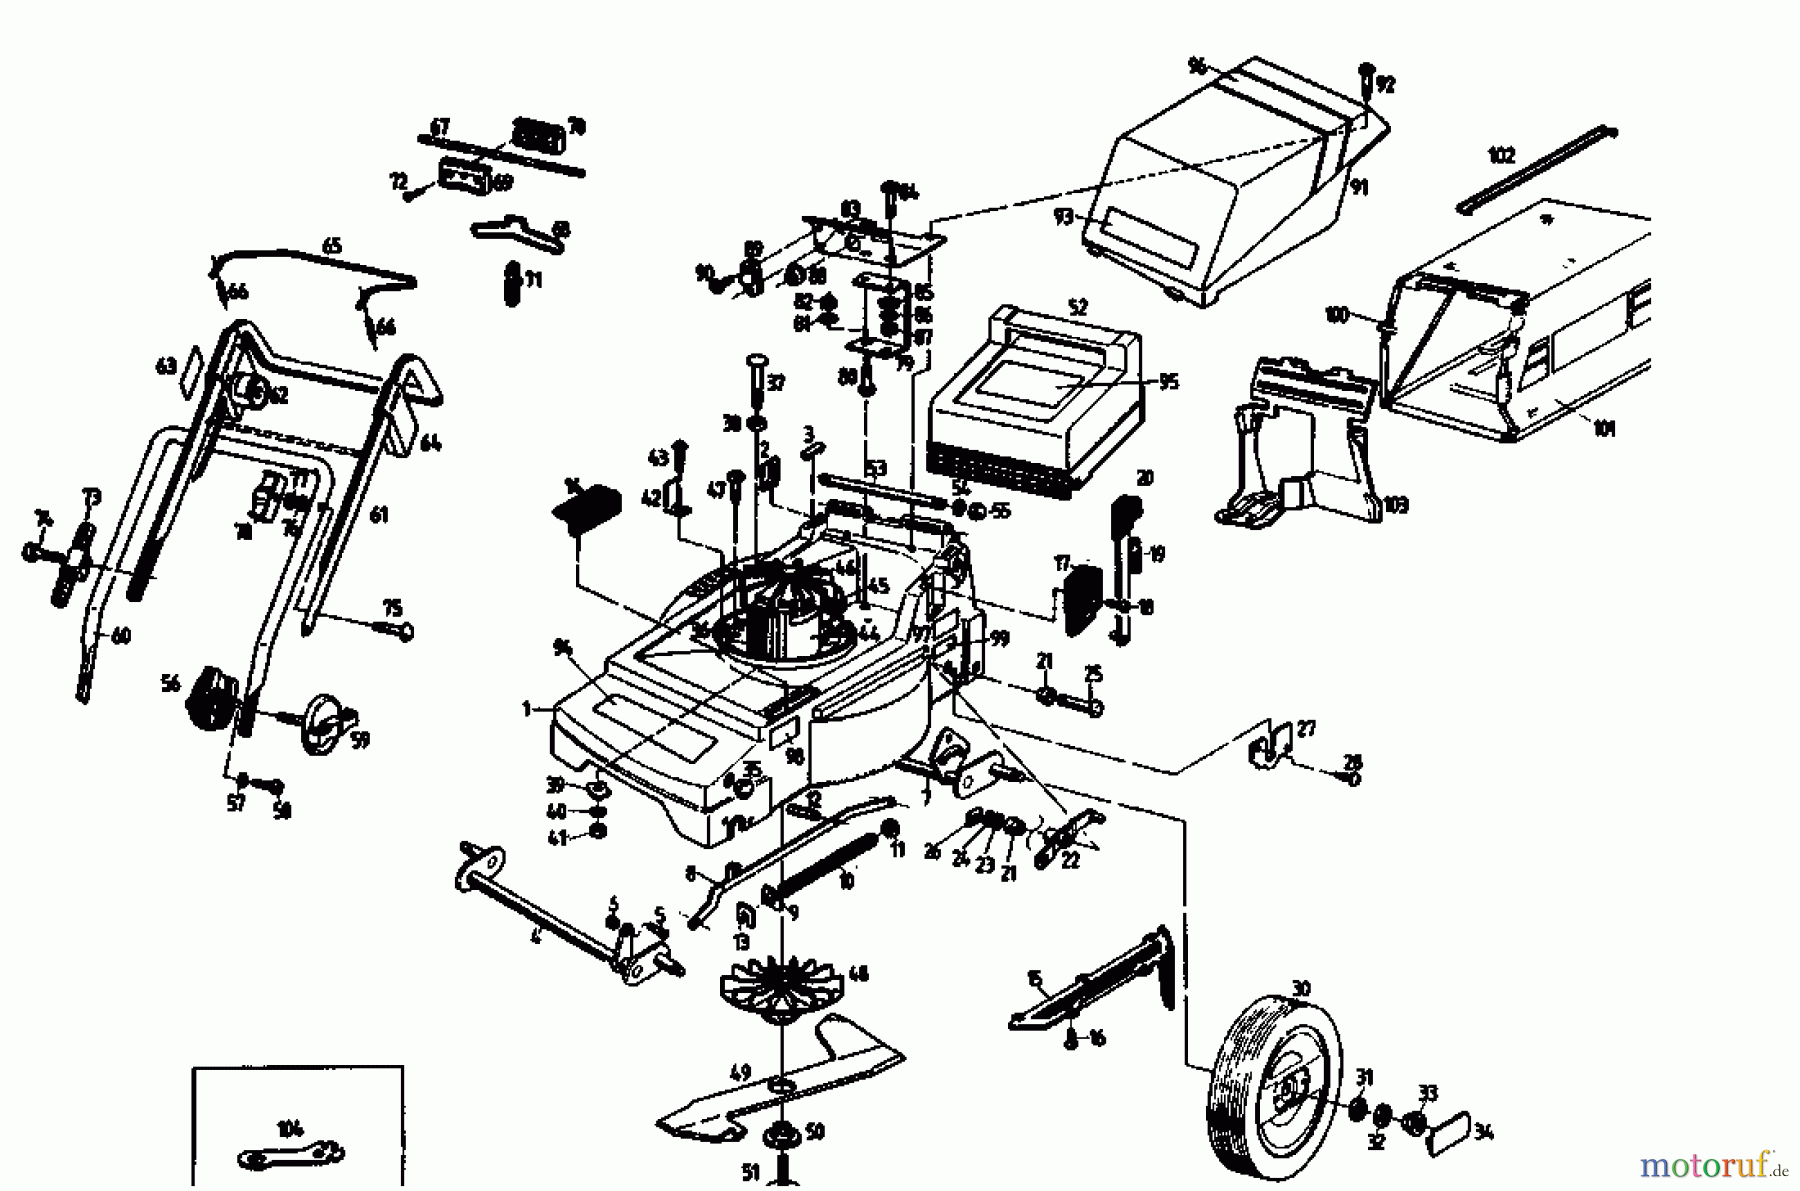  Gutbrod Tondeuse électrique MHE 400 04019.01  (1992) Machine de base